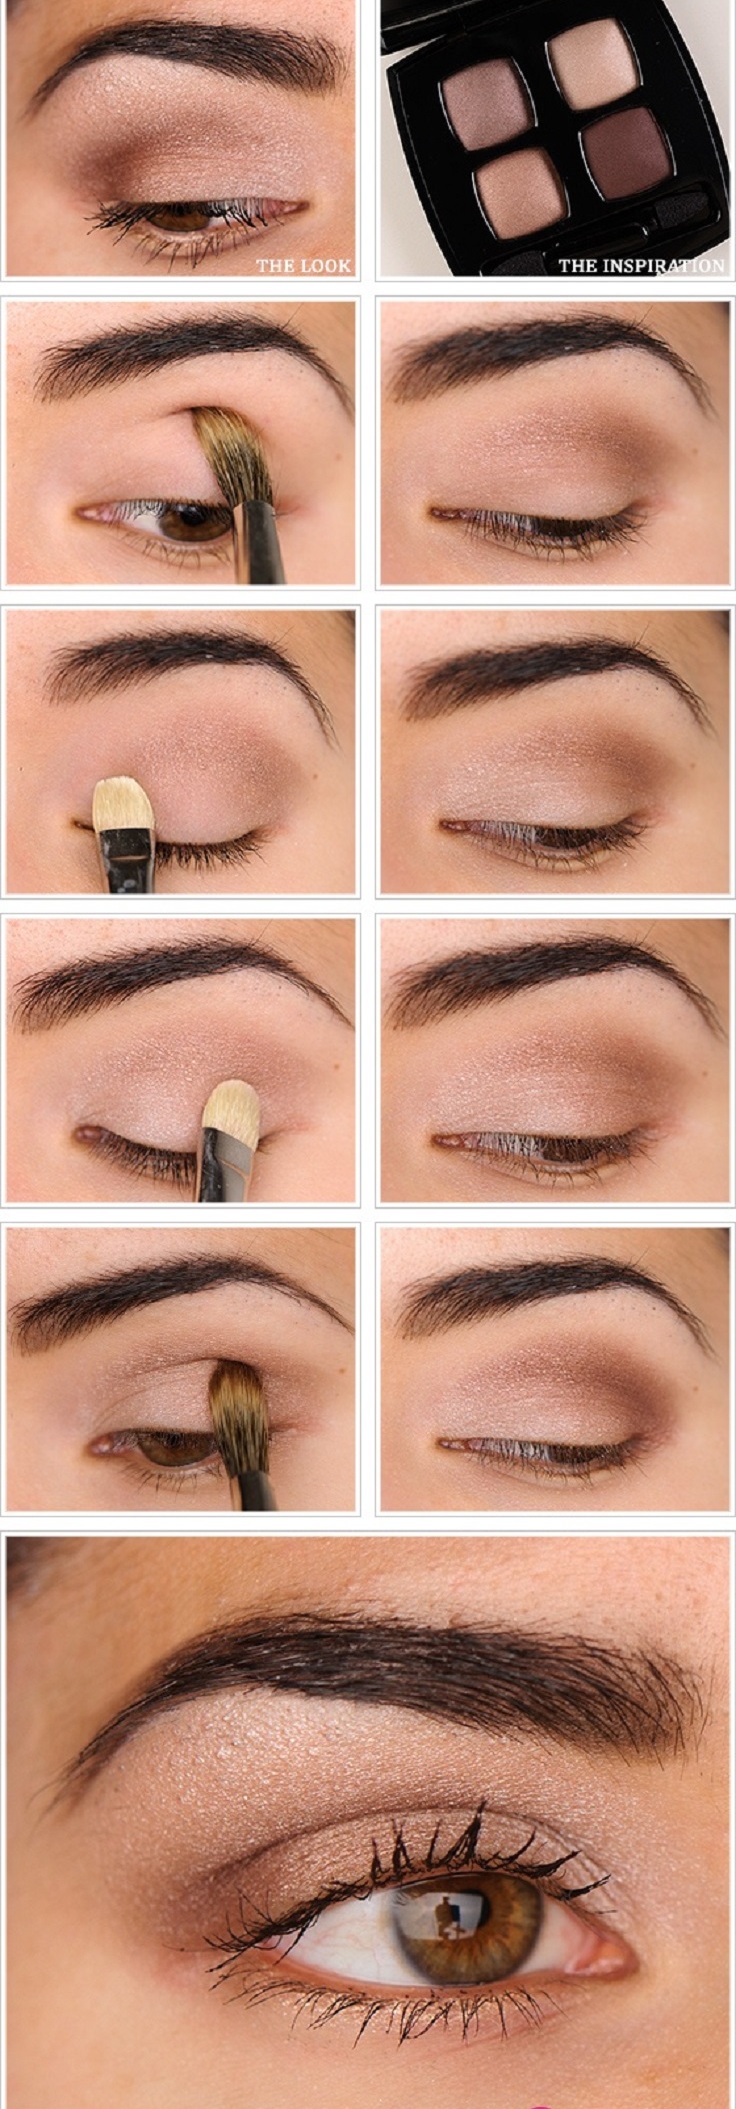 10 Natural  photo Top for Eye tutorial Tutorials Make makeup Up natural eye